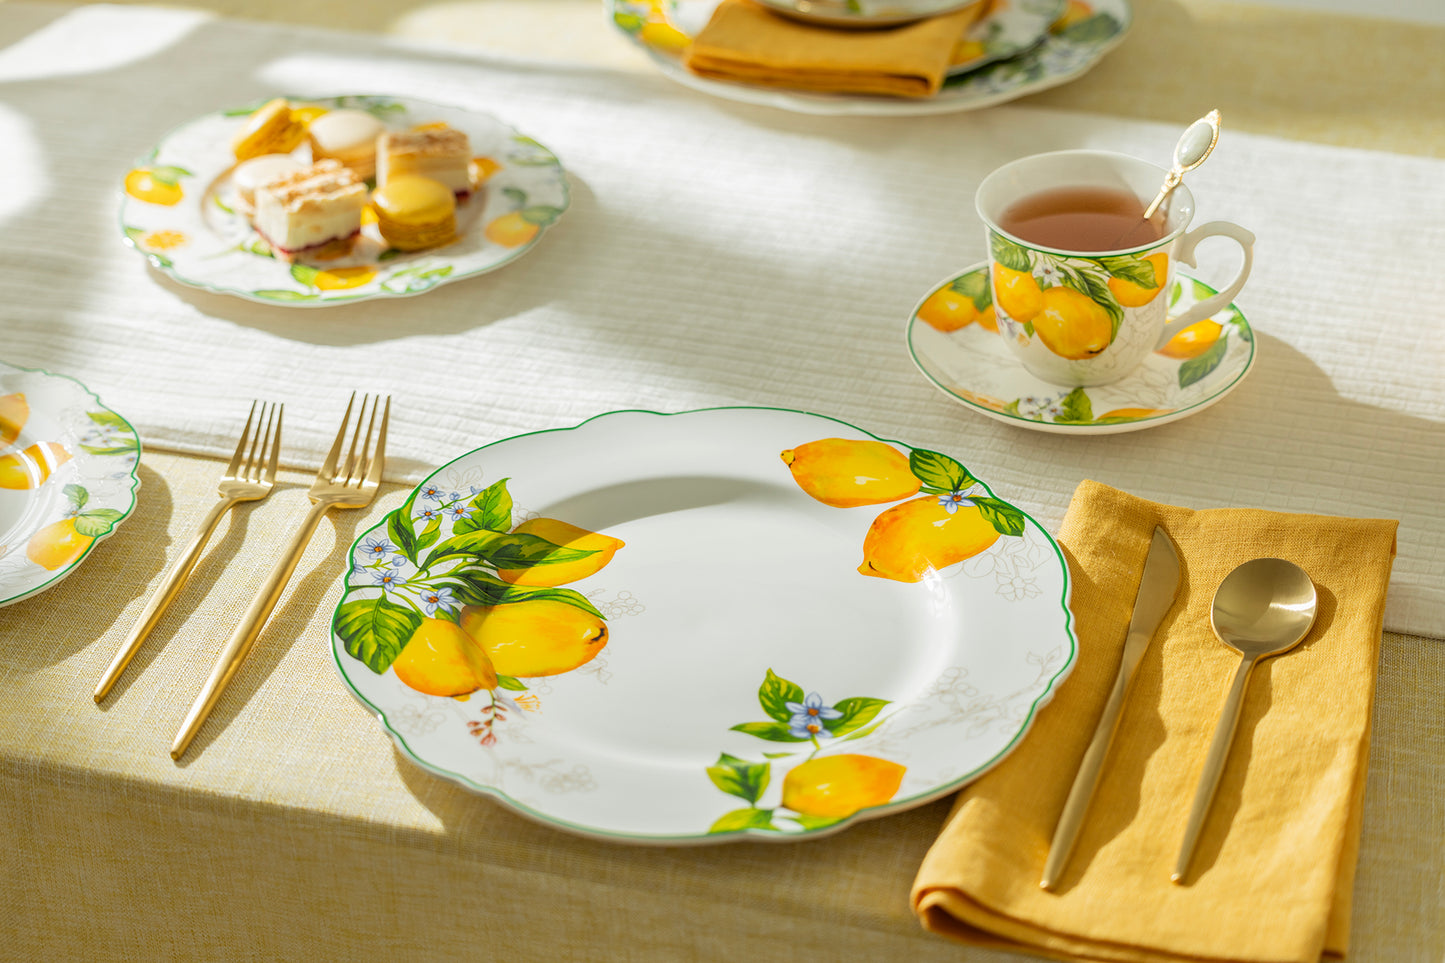 Lemon Garden Fine Porcelain Dessert / Dinner Plate